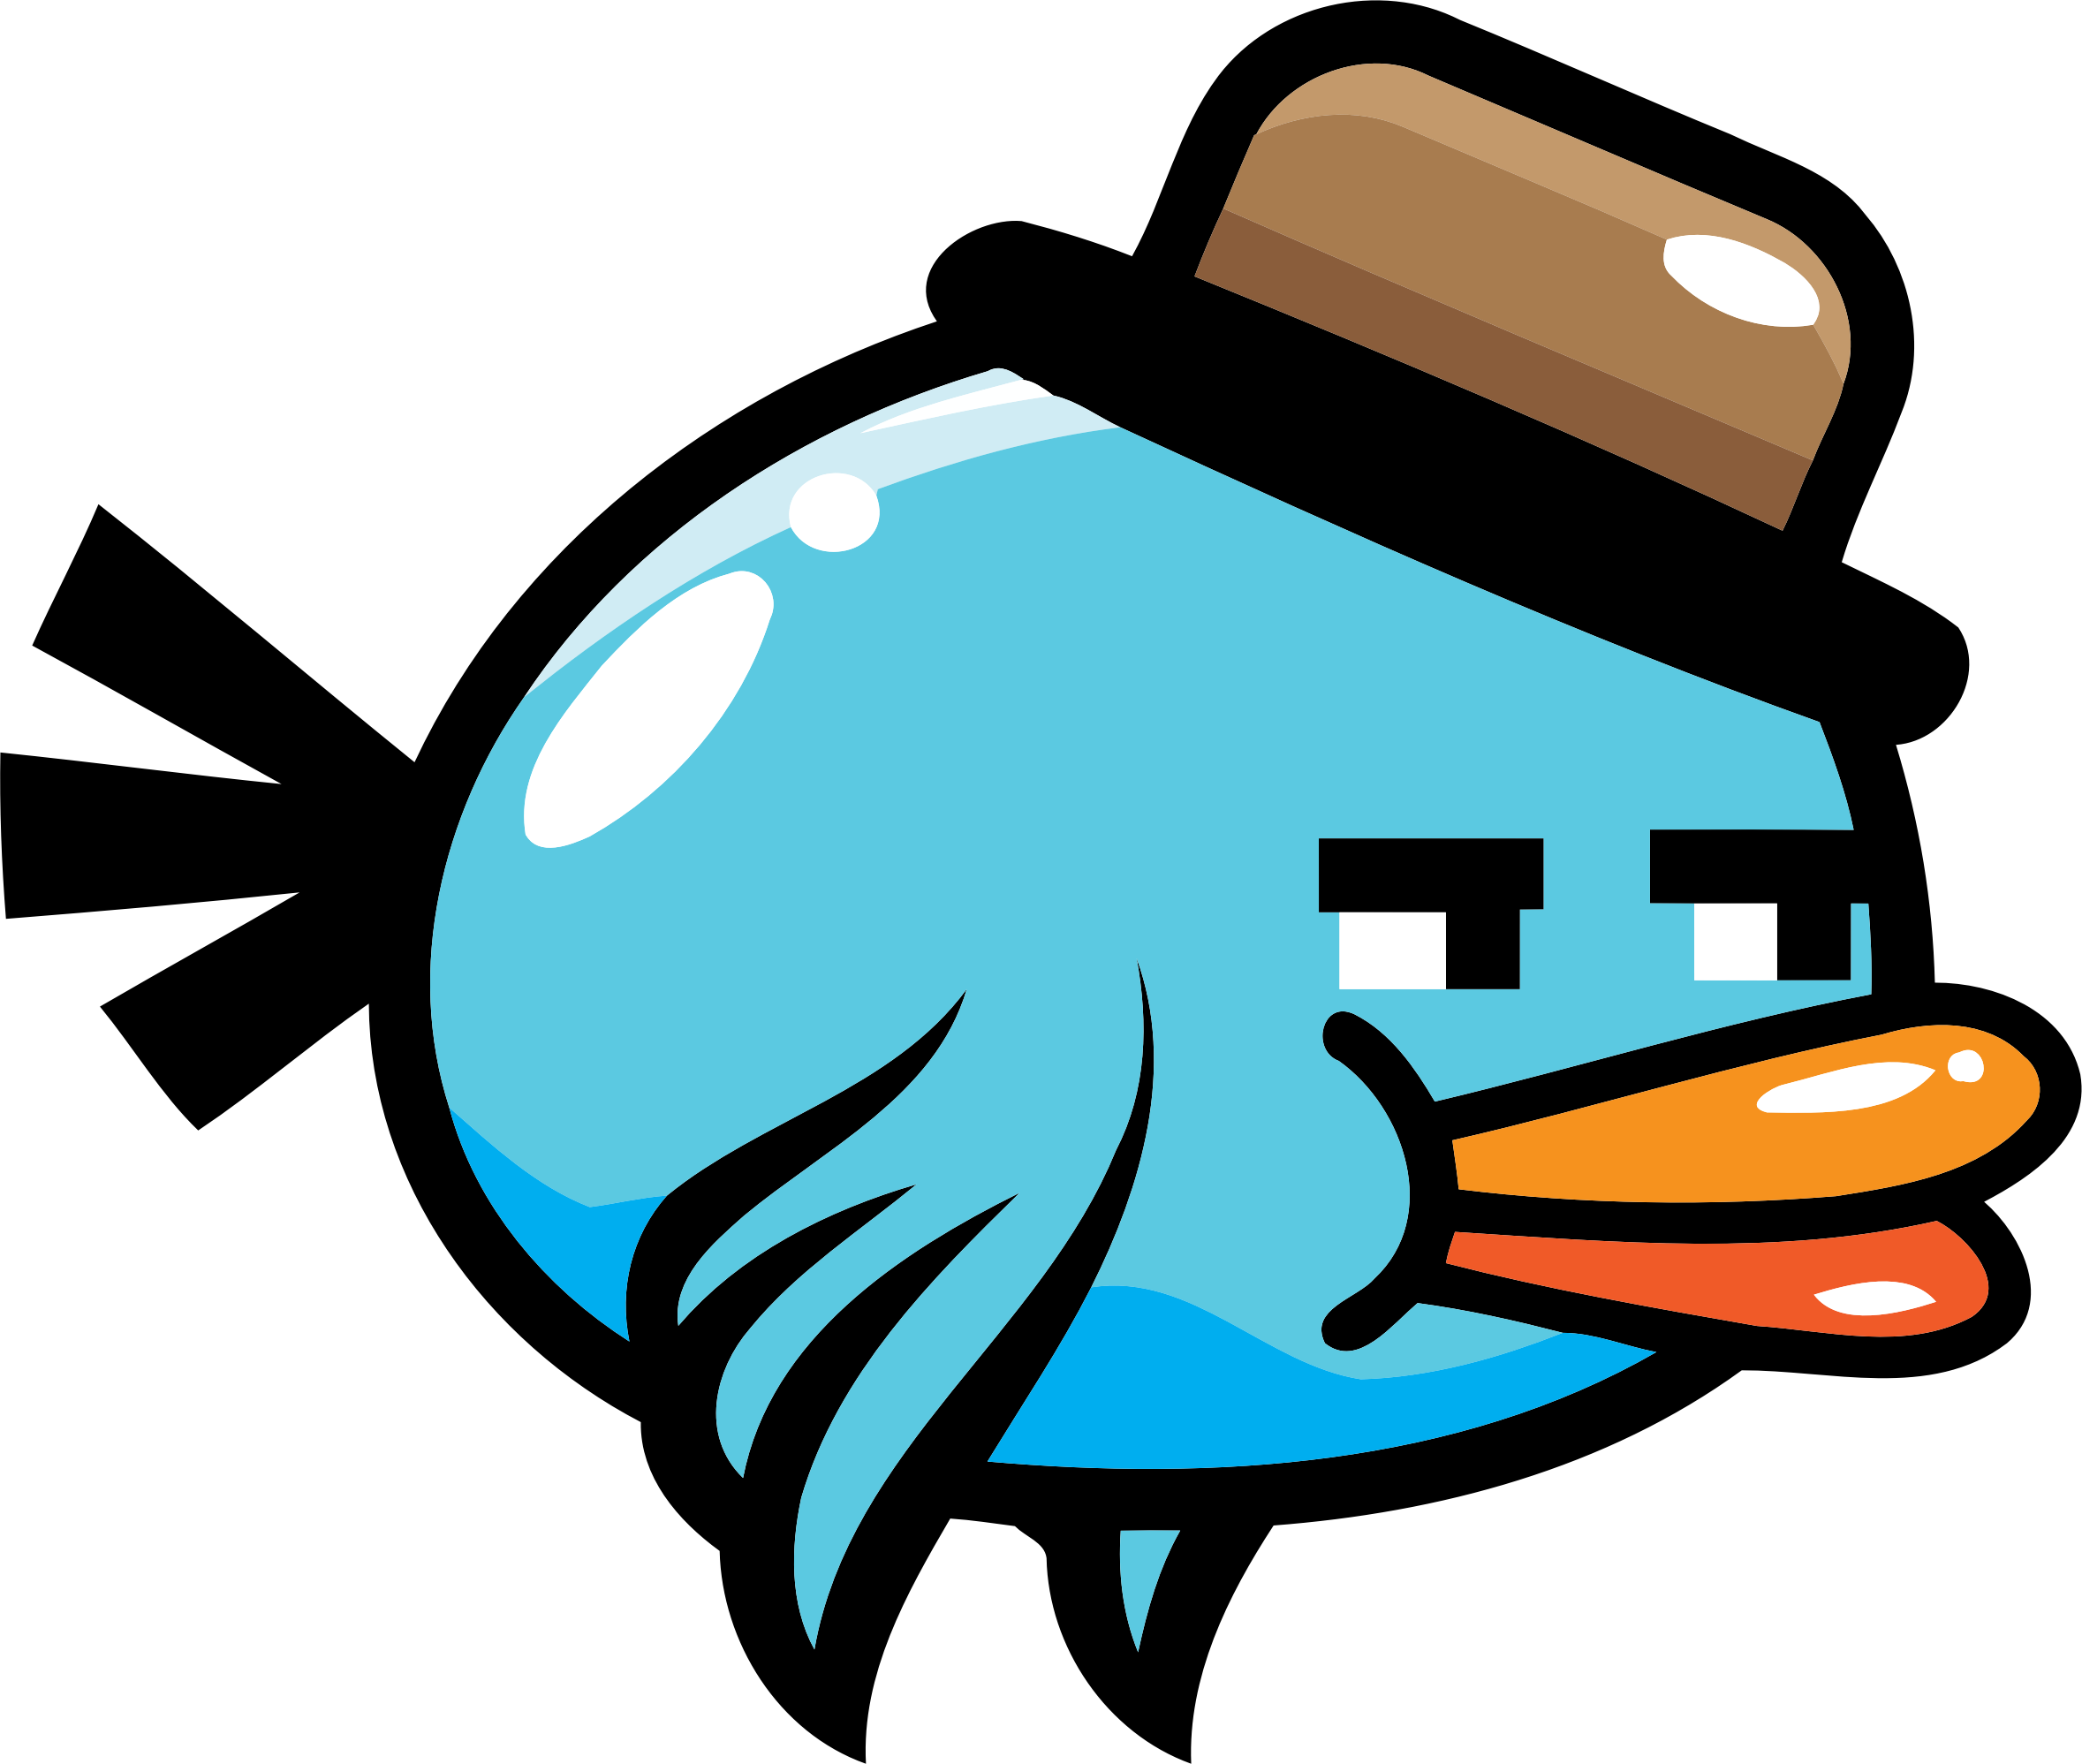 A Cartoon Blue Bird With A Hat